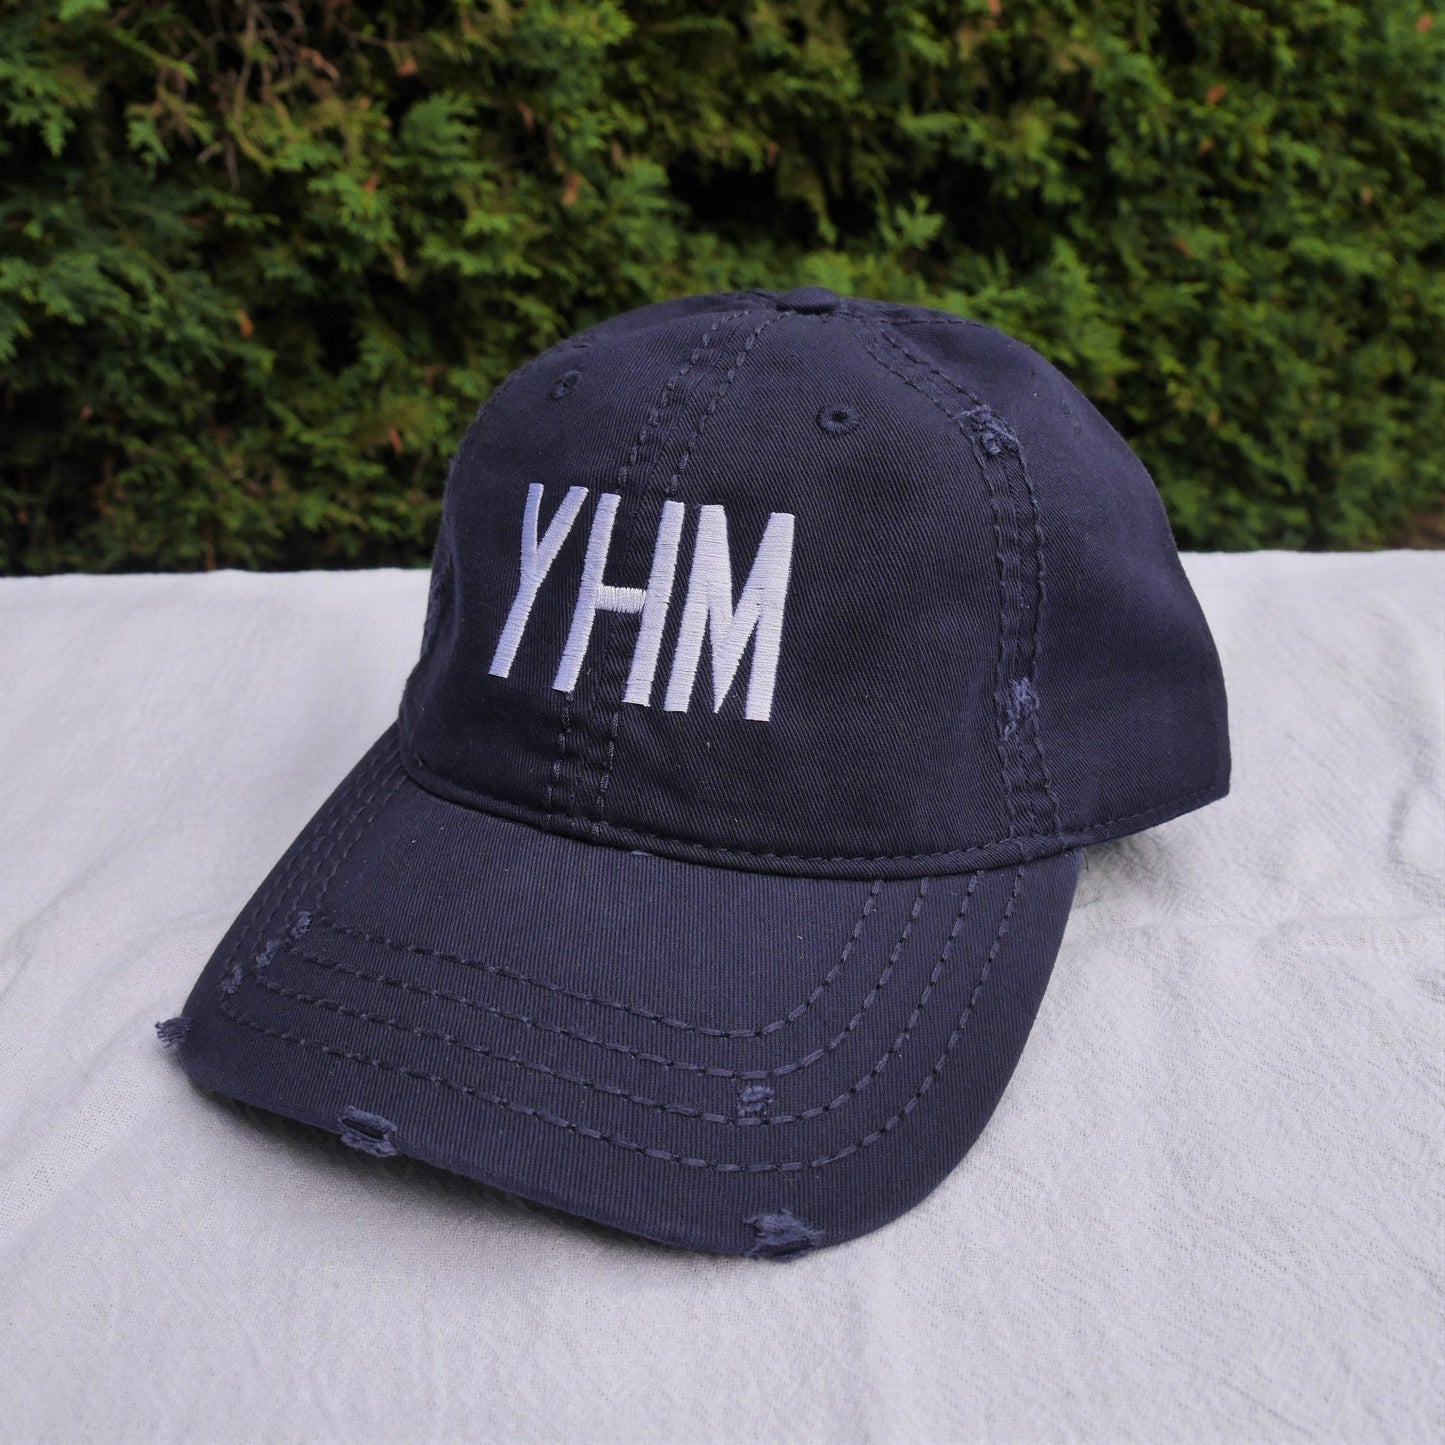 Airport Code Camouflage Trucker Hat - Orange • BNA Nashville • YHM Designs - Image 21